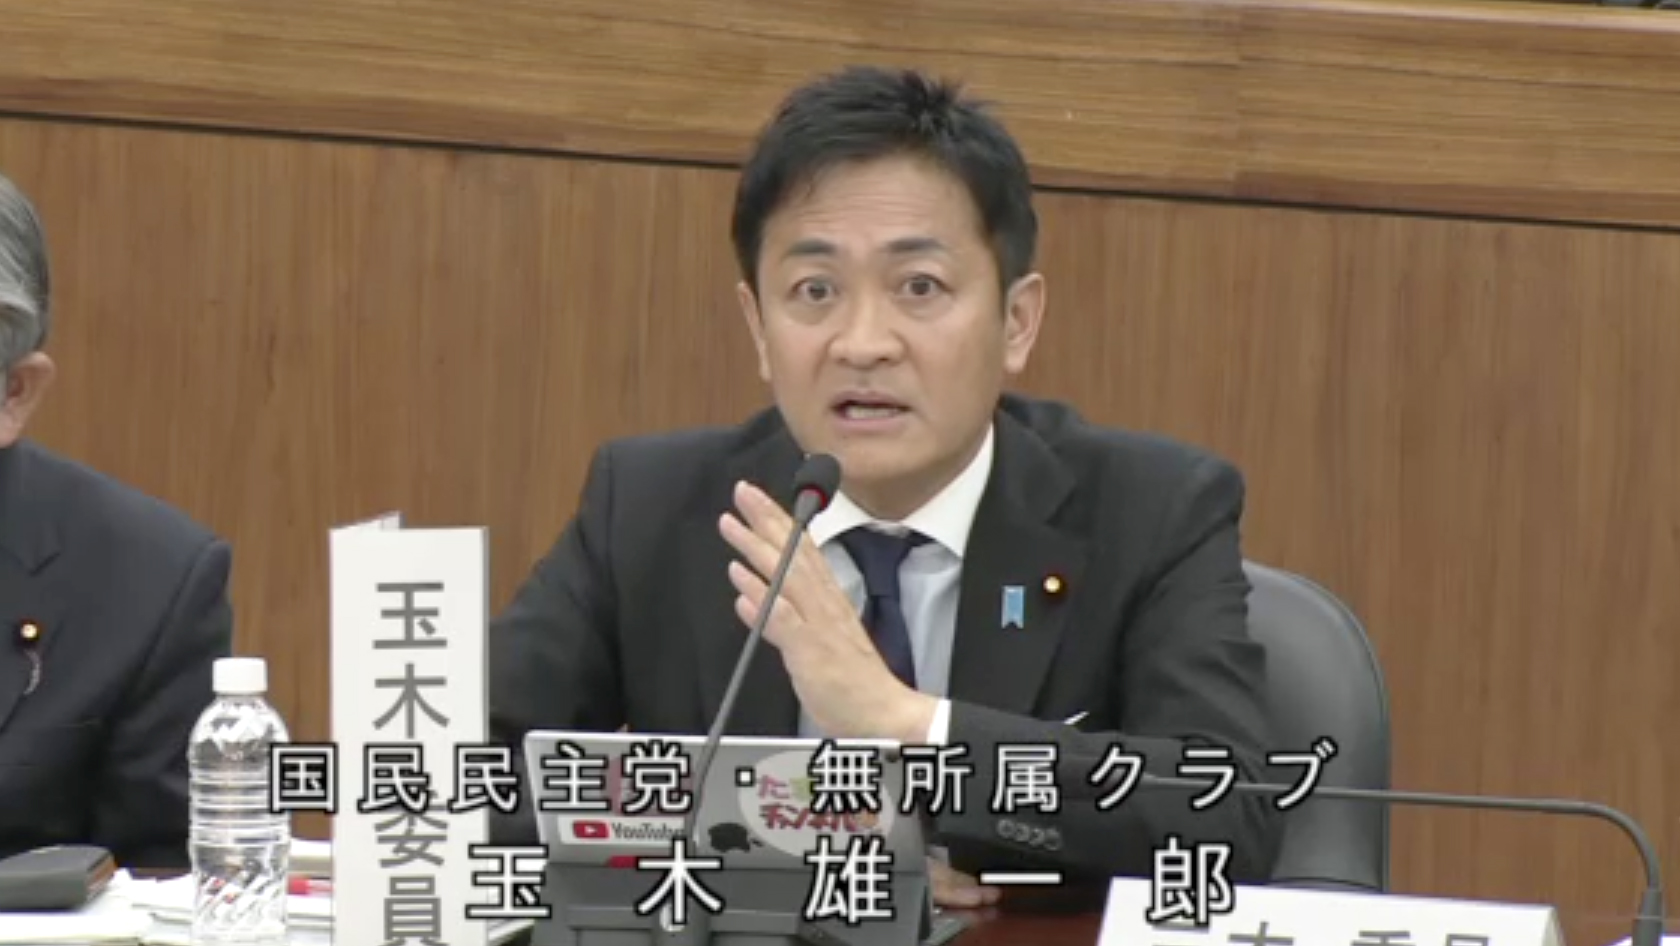 【衆憲法審】玉木代表が日本国憲法に密接に関連する基本法制などについて発言